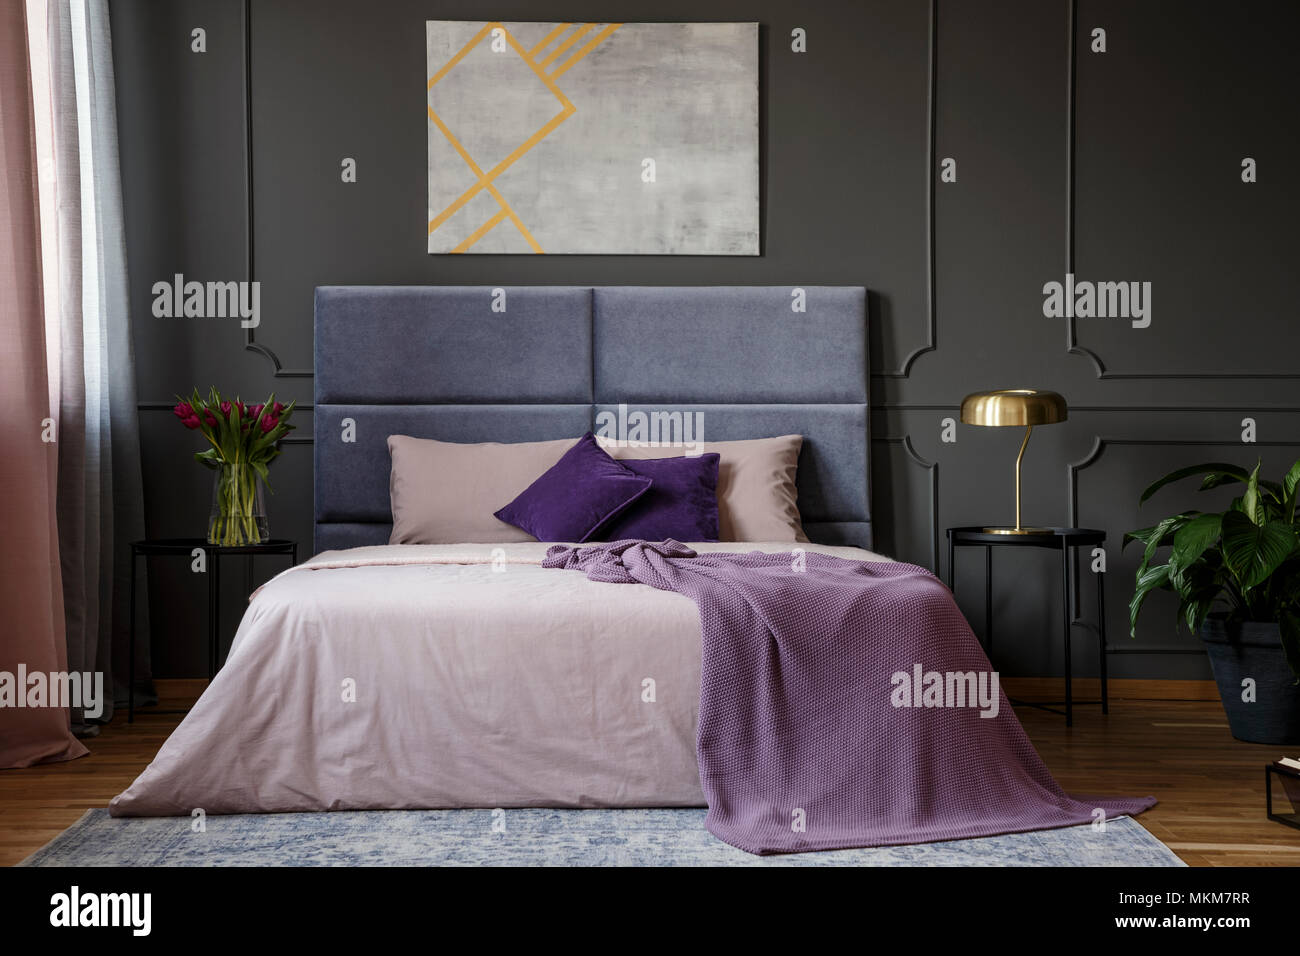 Violetta coperta del letto in camera da letto in colori pastello con interni grigio poster sul muro grigio con lo stampaggio Foto Stock